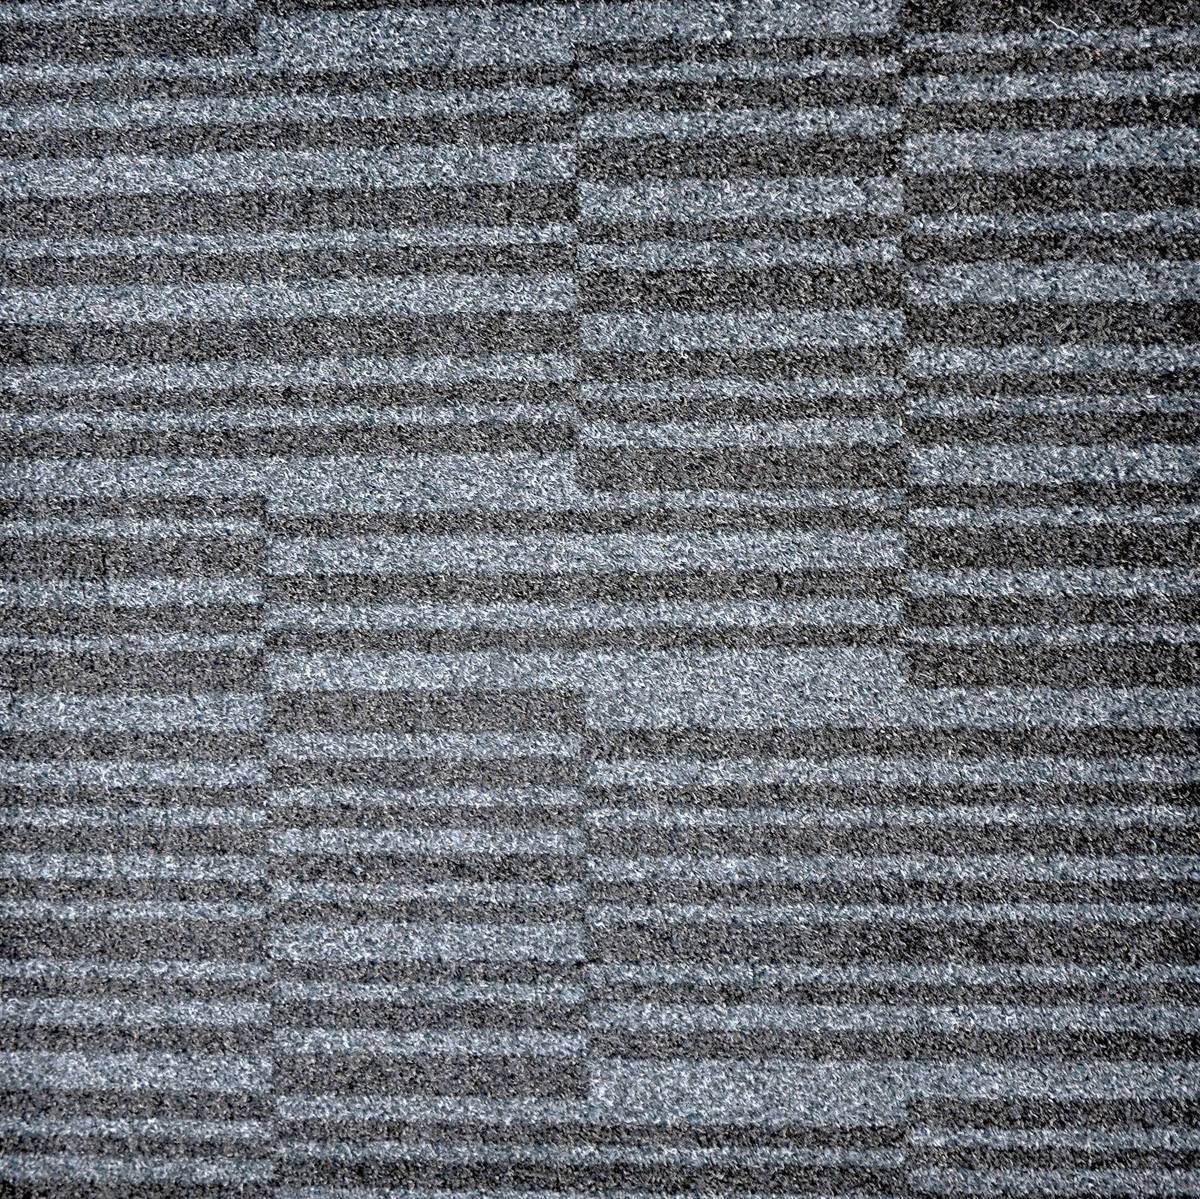 Paragon Workspace Entrance Design Carpet Design 2 Victor